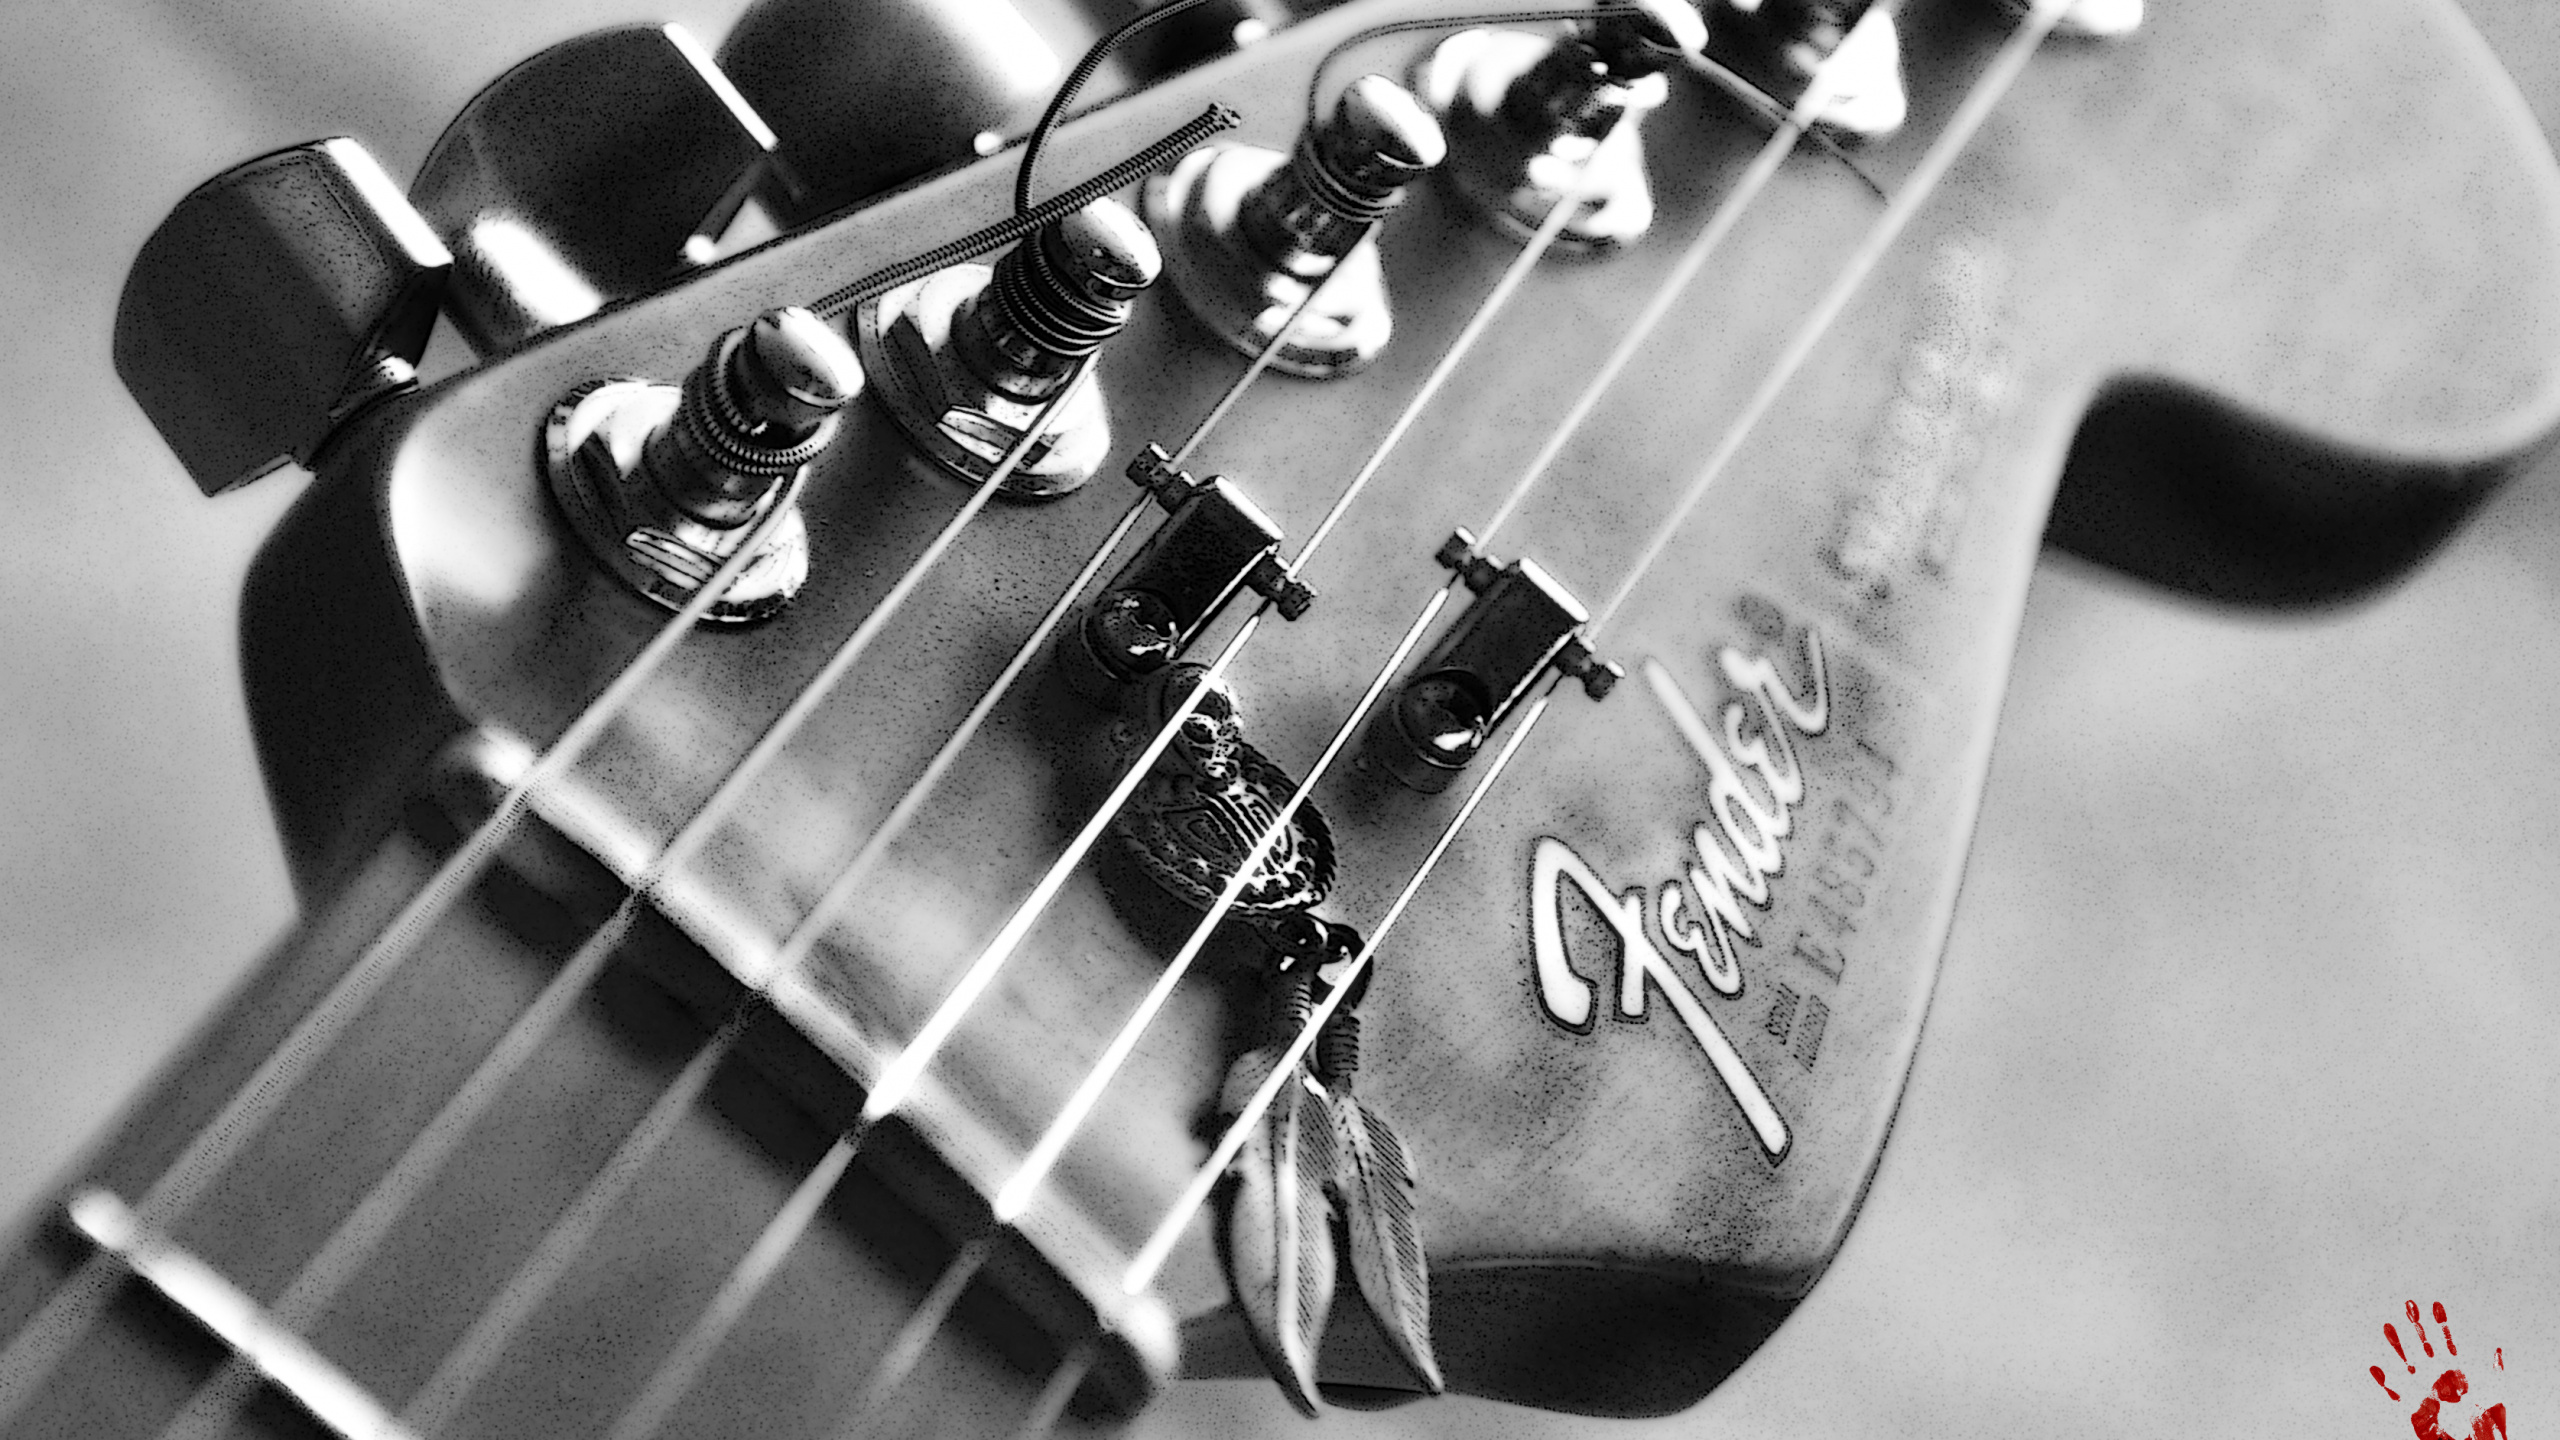 Gitarre, Fender Telecaster, Bass, Gezupfte Saiteninstrumente, Fender Standard Stratocaster. Wallpaper in 2560x1440 Resolution